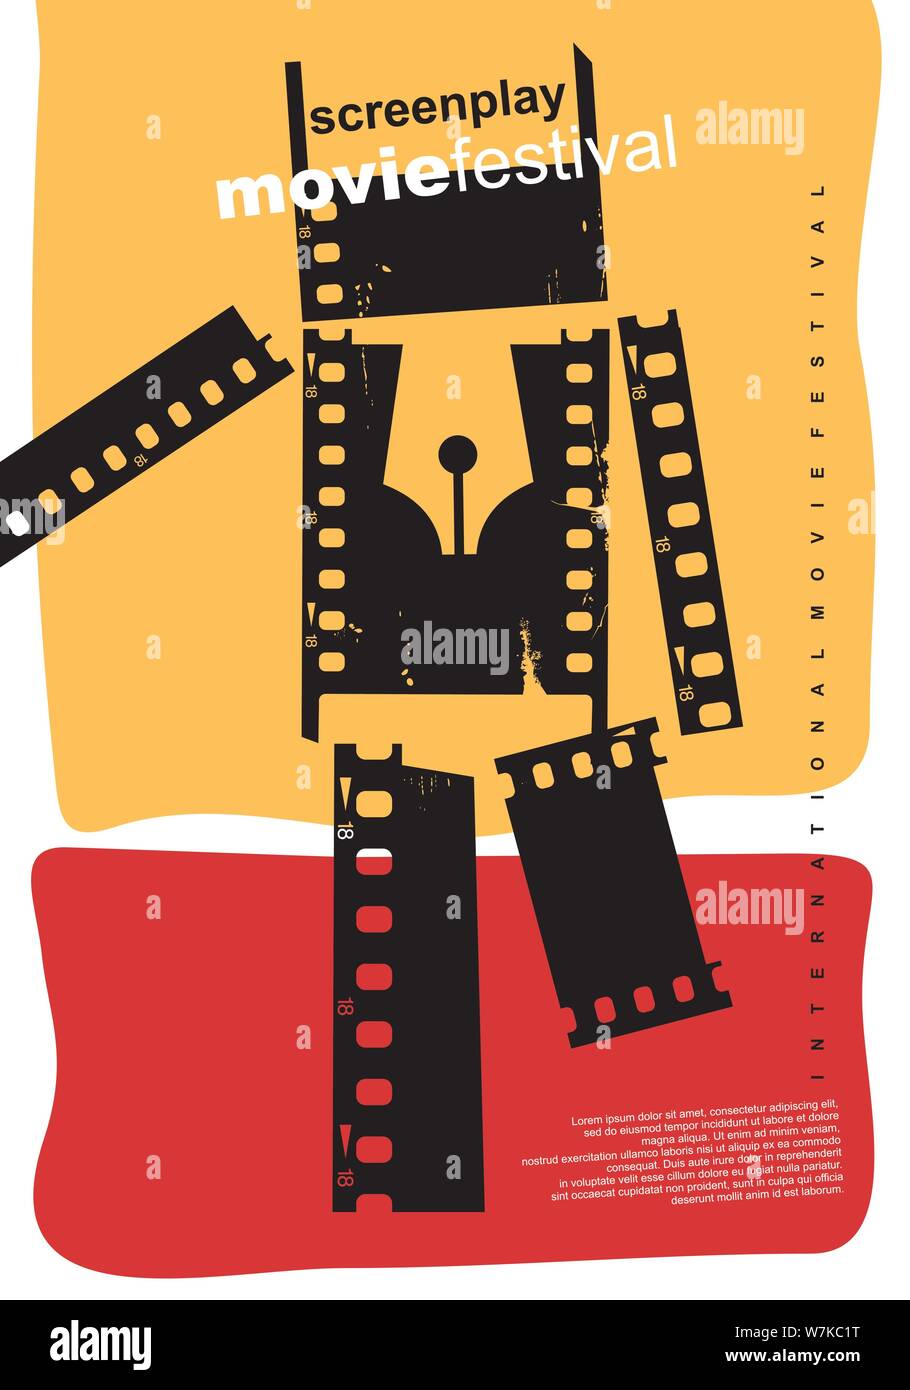 Sceneggiatura film festival abstract poster design. Artistico concetto flyer per evento cinematografico con la figura fatta da strisce di pellicola. Cinema illustrazione vettoriale. Illustrazione Vettoriale